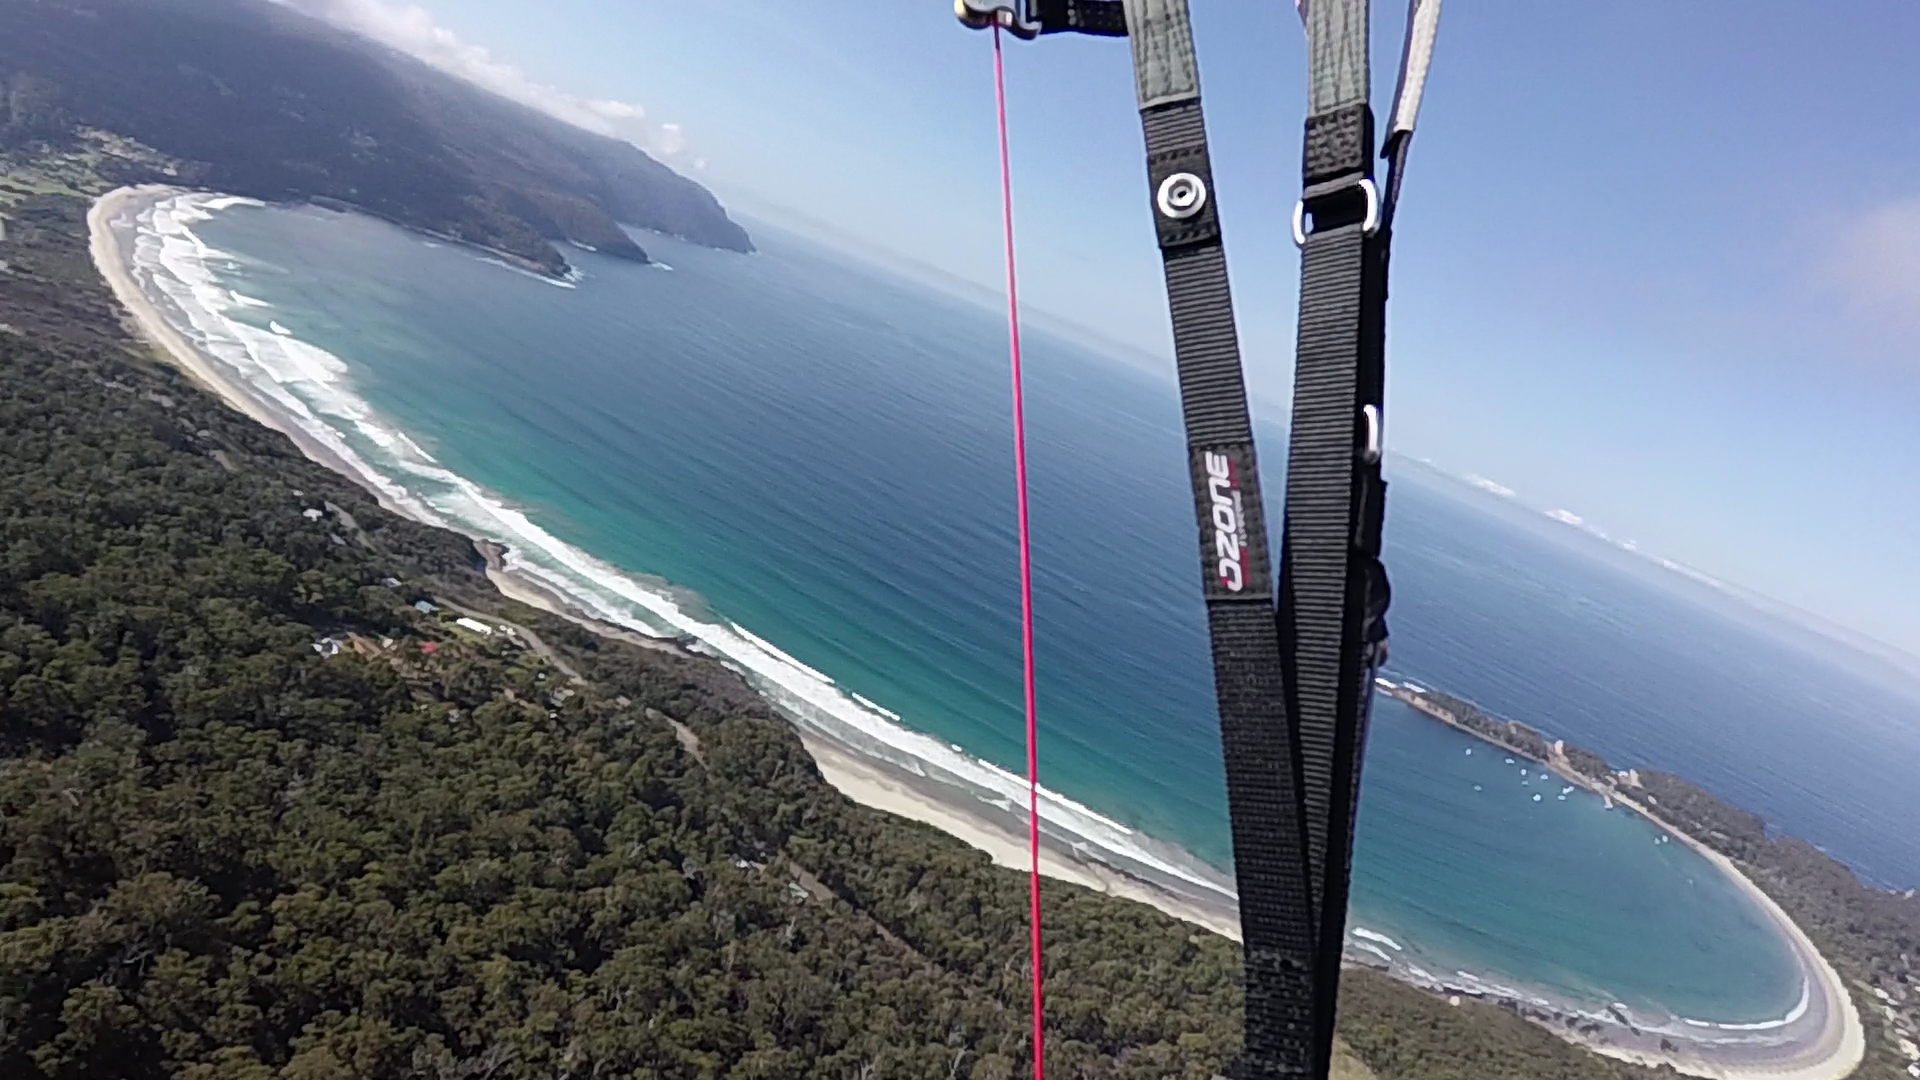 Paragliding in Tasmania (PIRATE'S BAY)